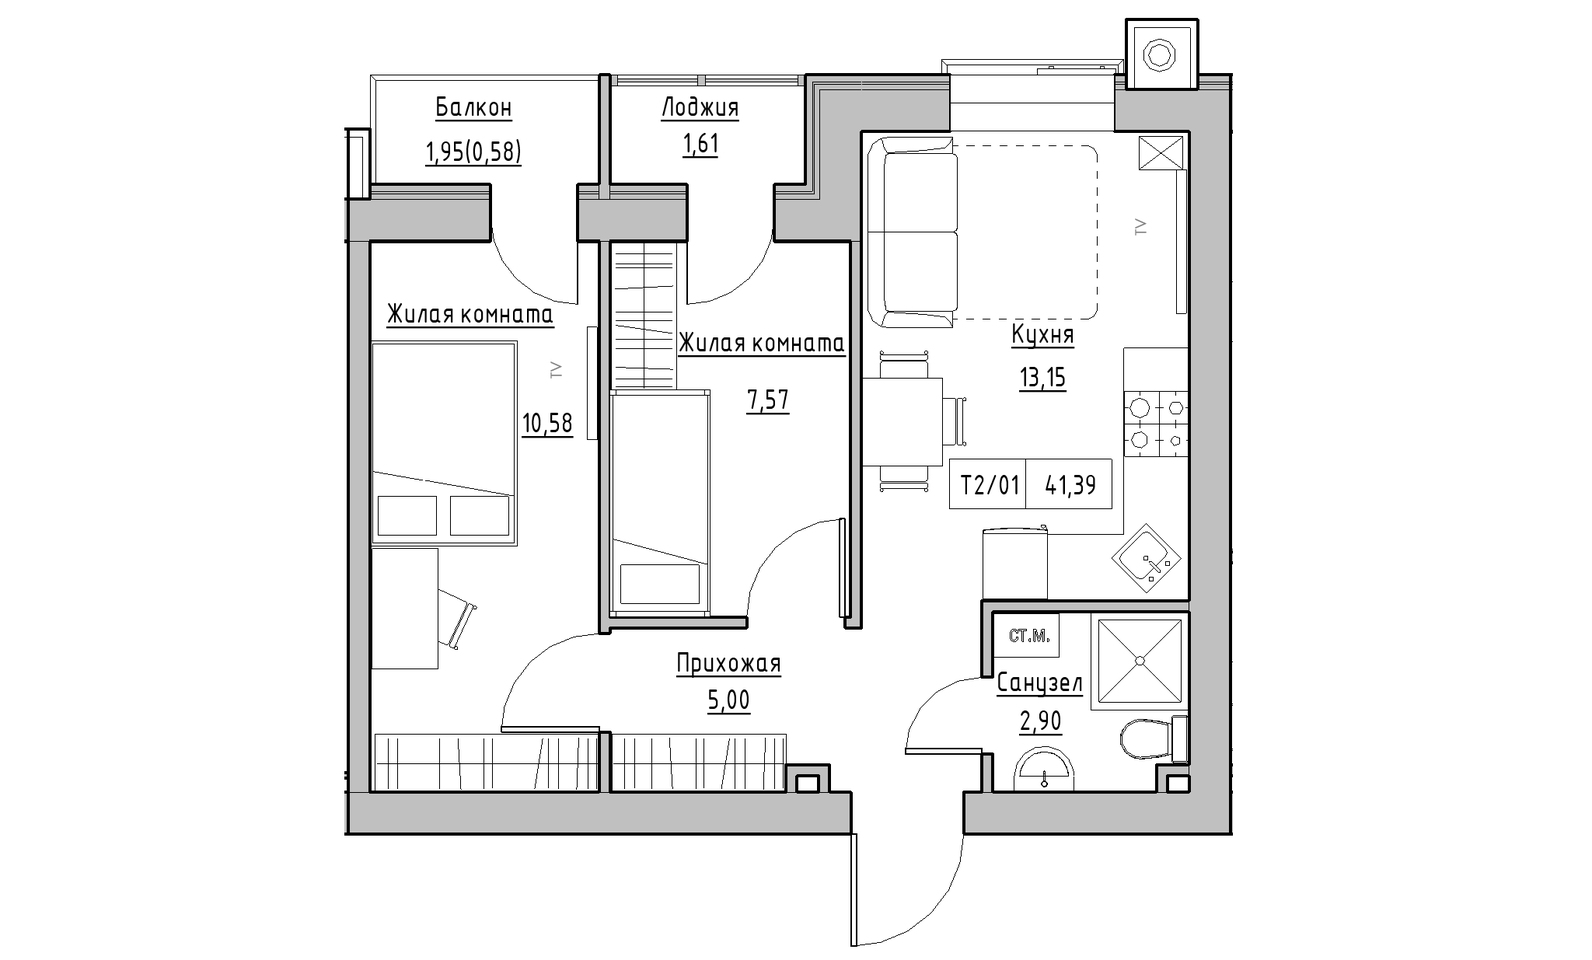 Планування 2-к квартира площею 41.39м2, KS-014-03/0005.